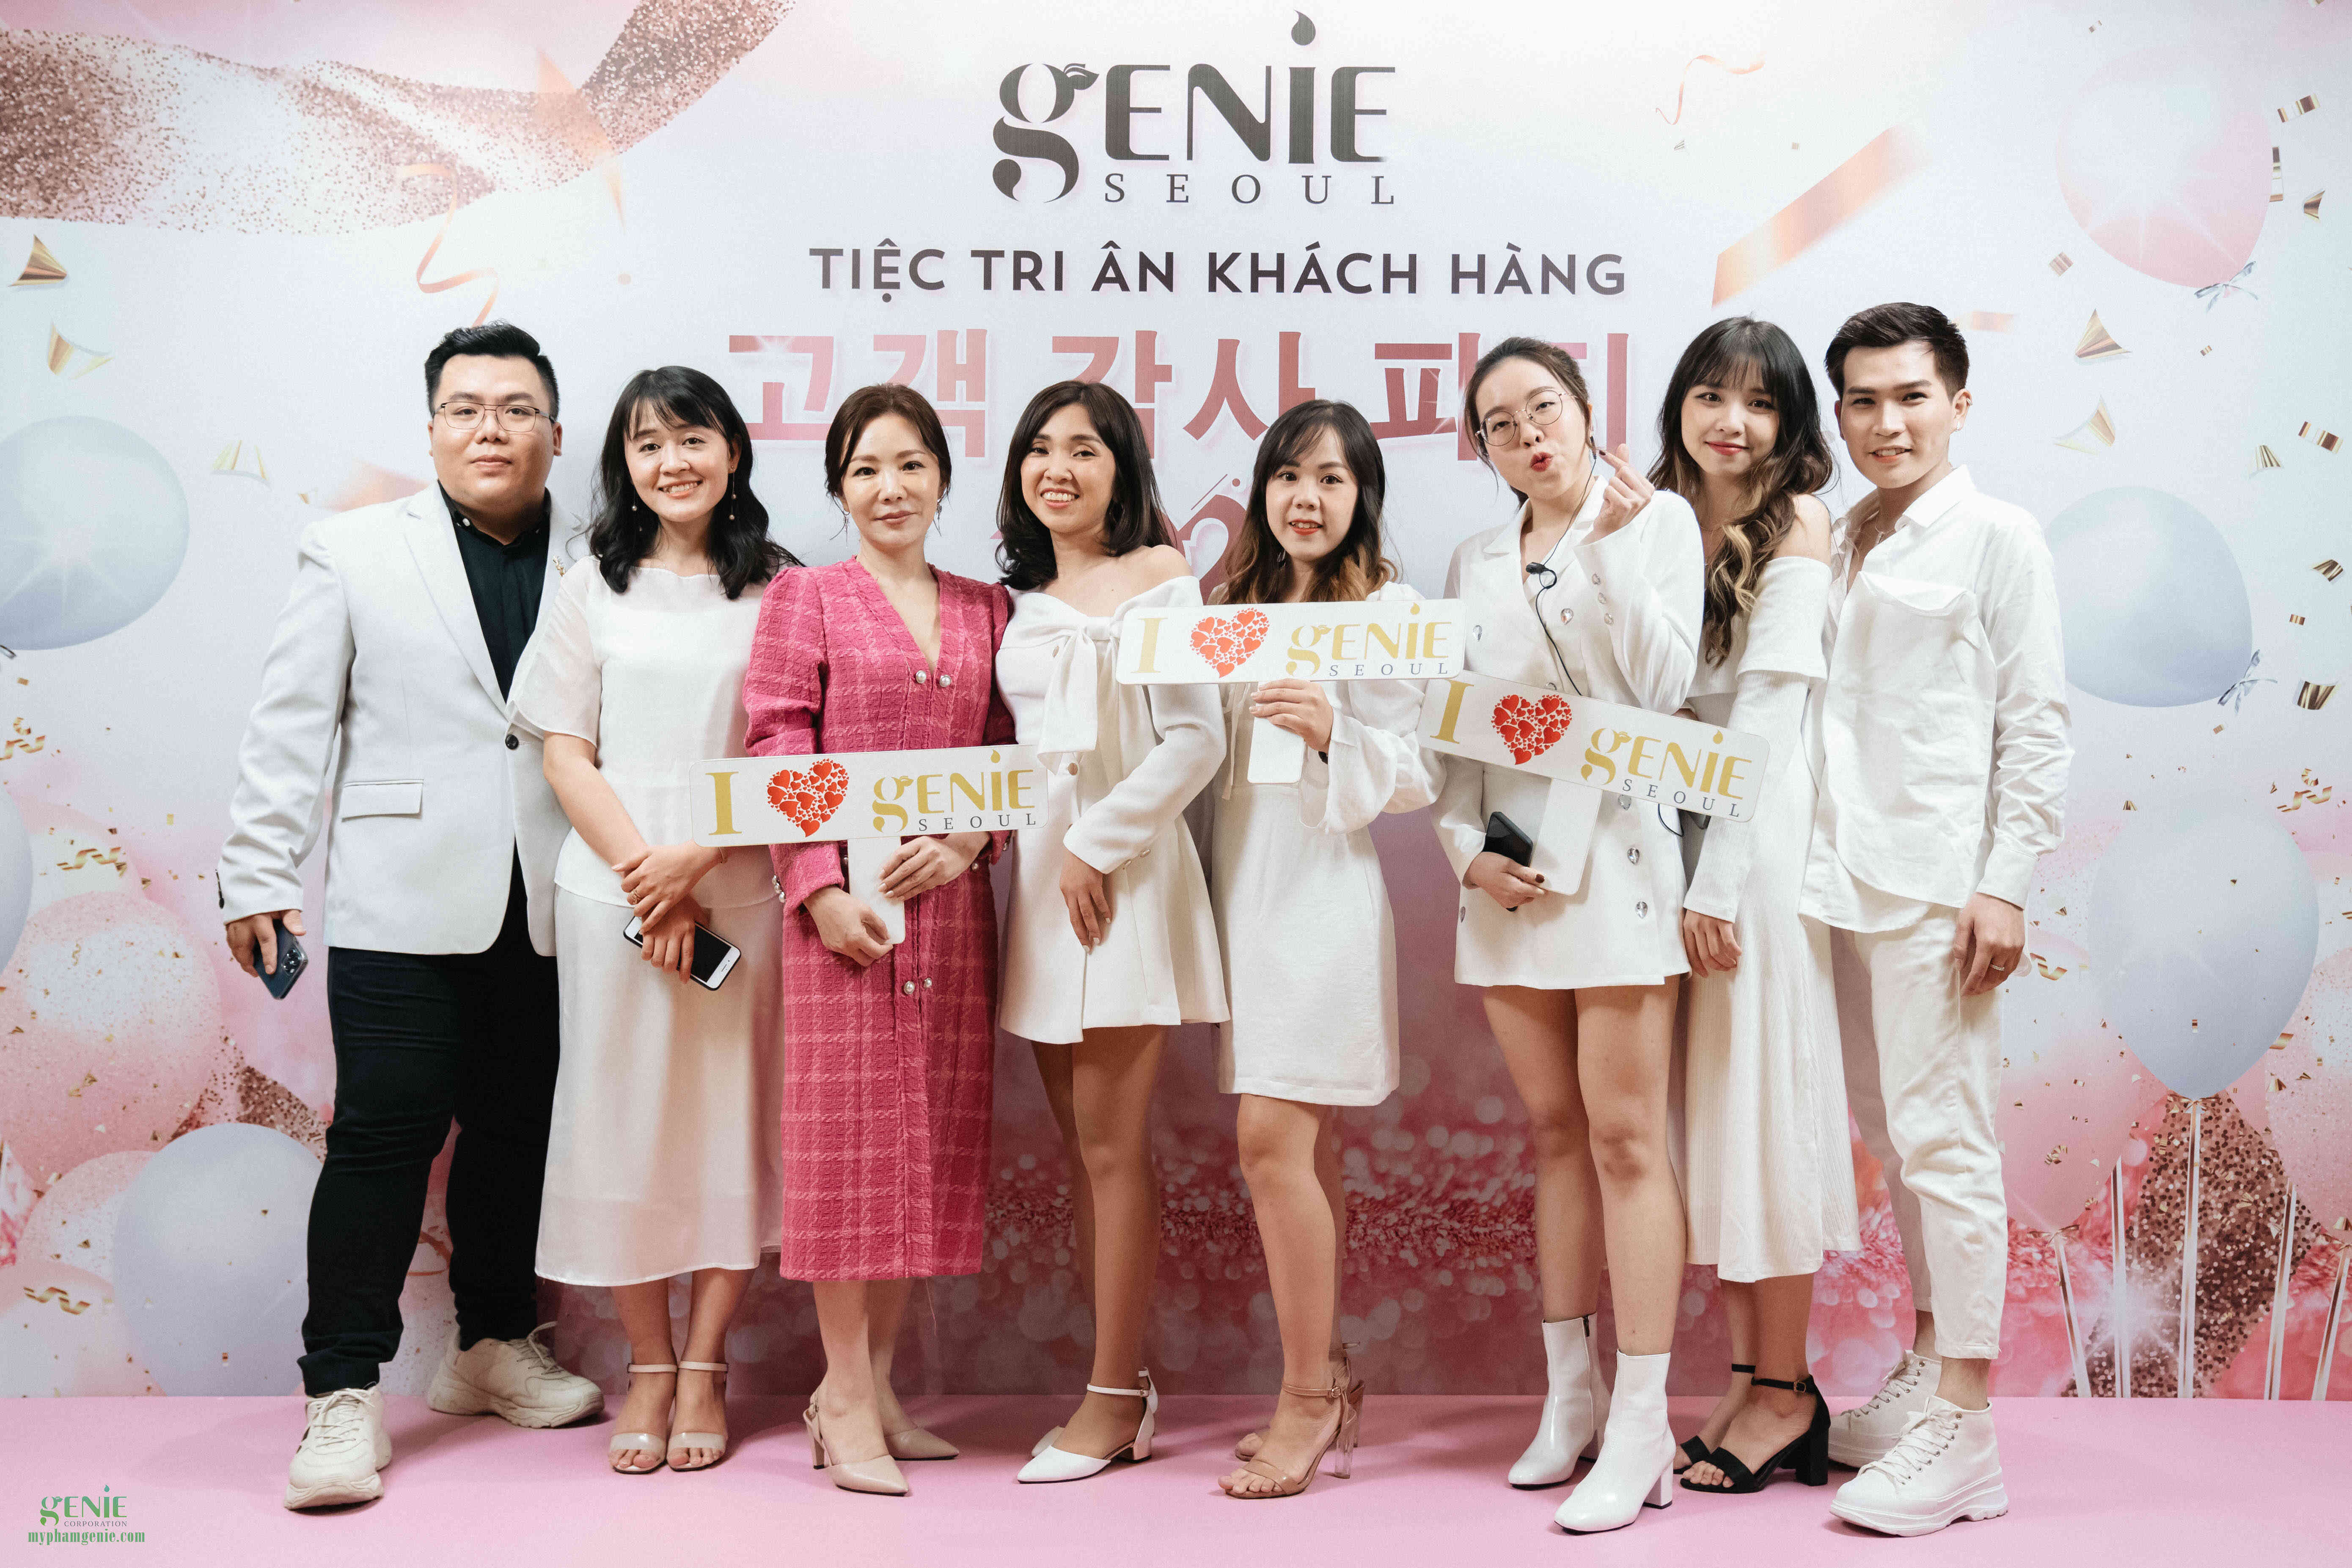 Ca sĩ Lam Trường cùng Genie tri ân khách hàng 2020